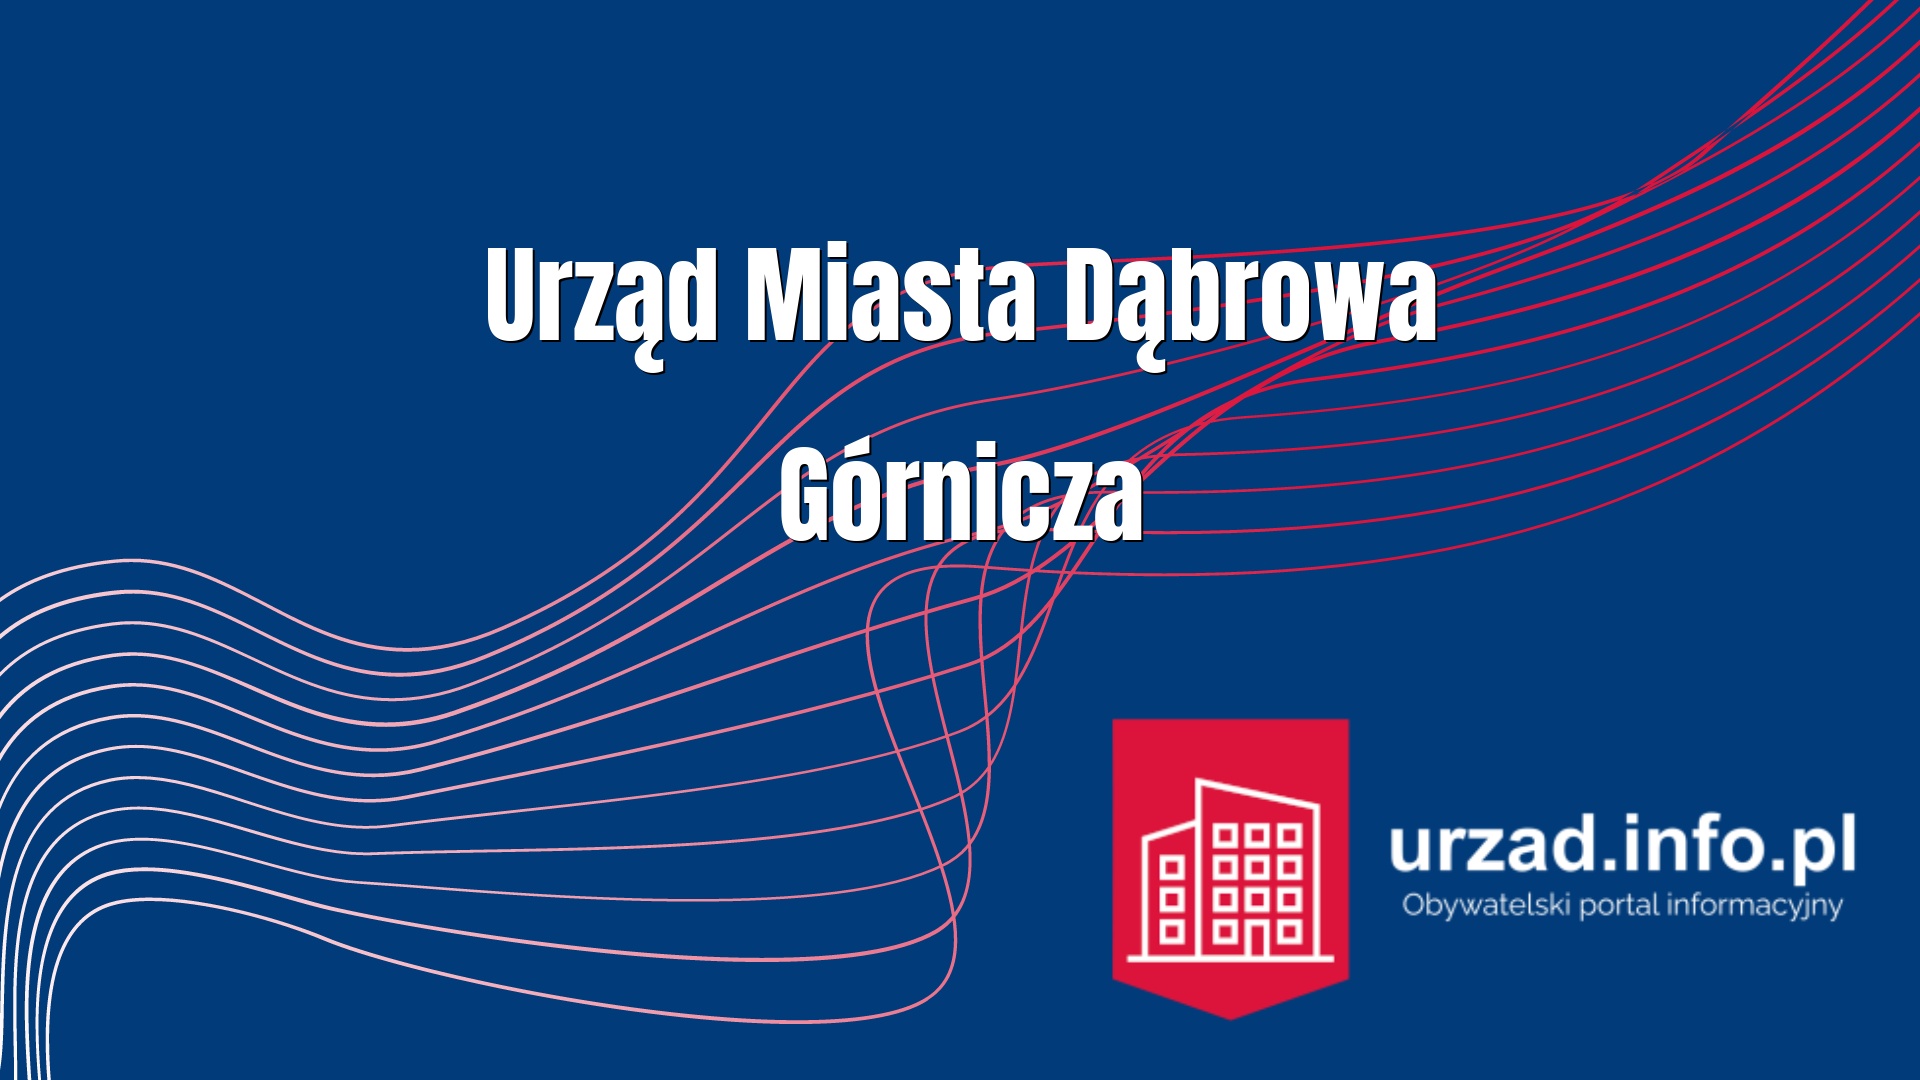 Urząd Miasta Dąbrowa Górnicza